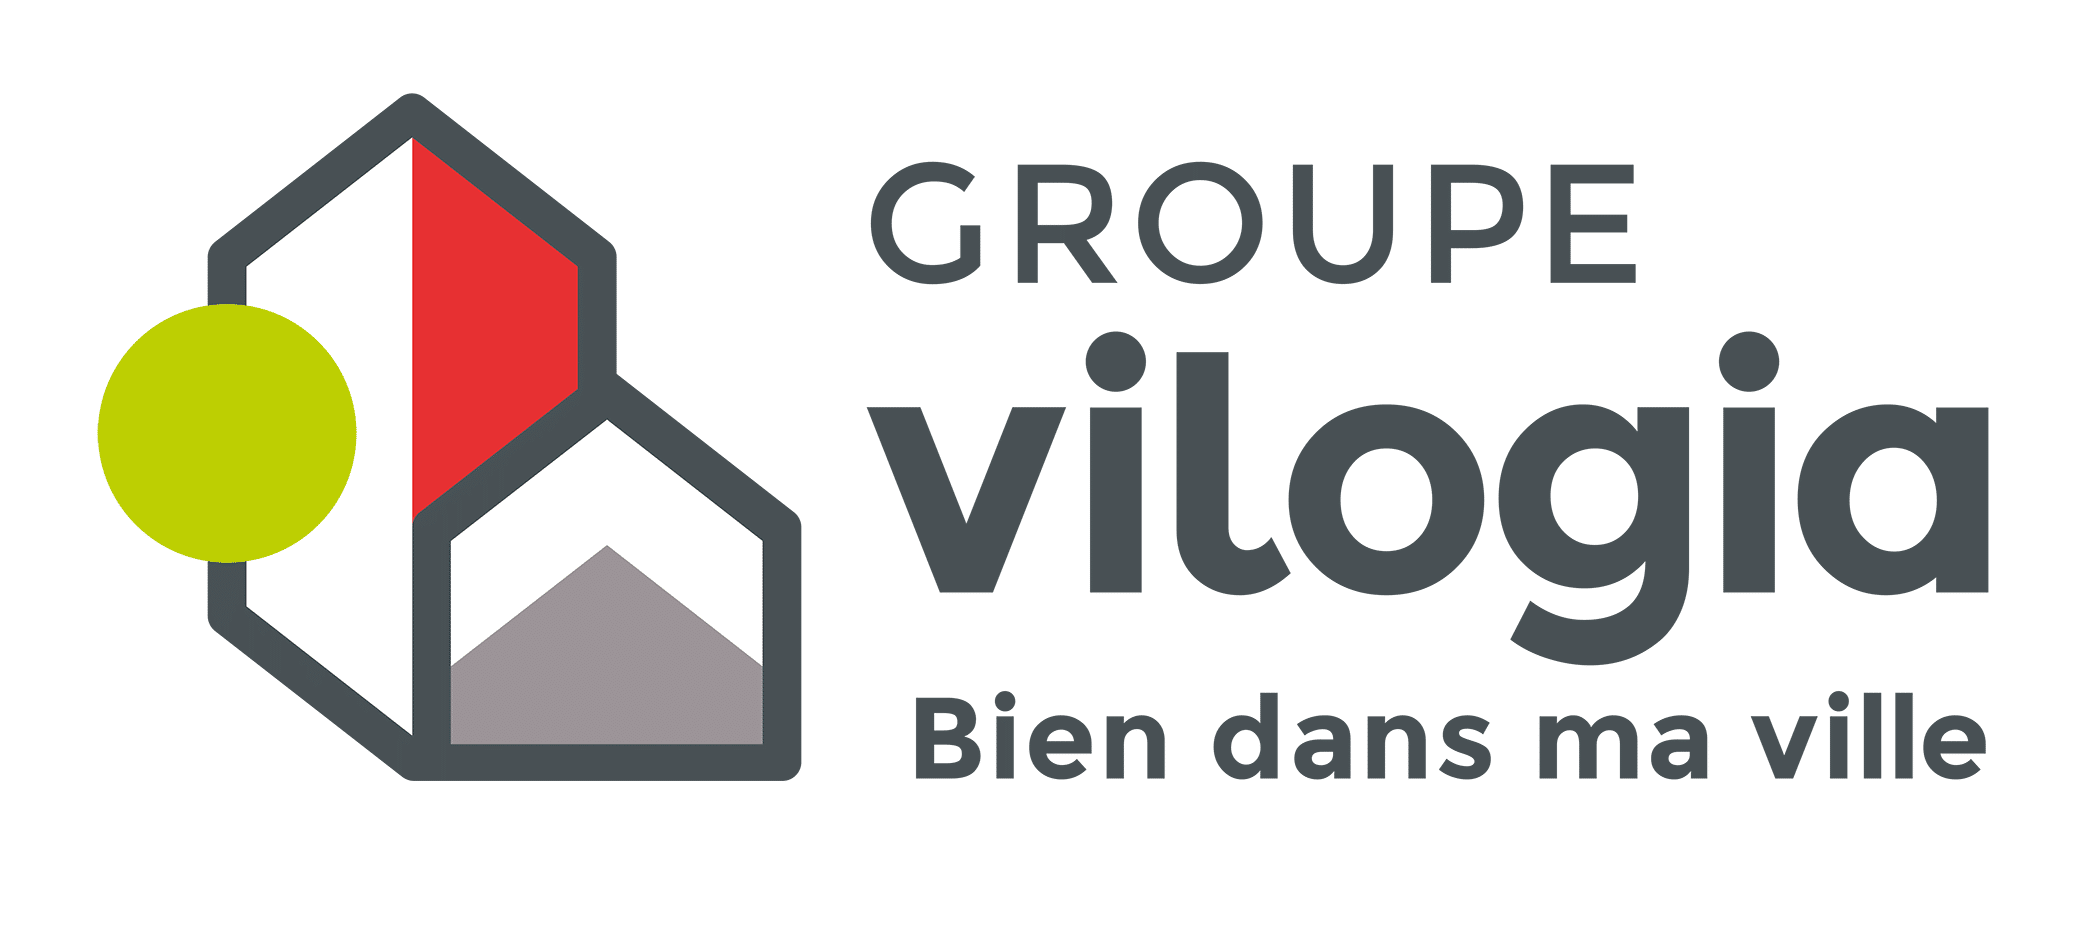 vilogia groupe logo